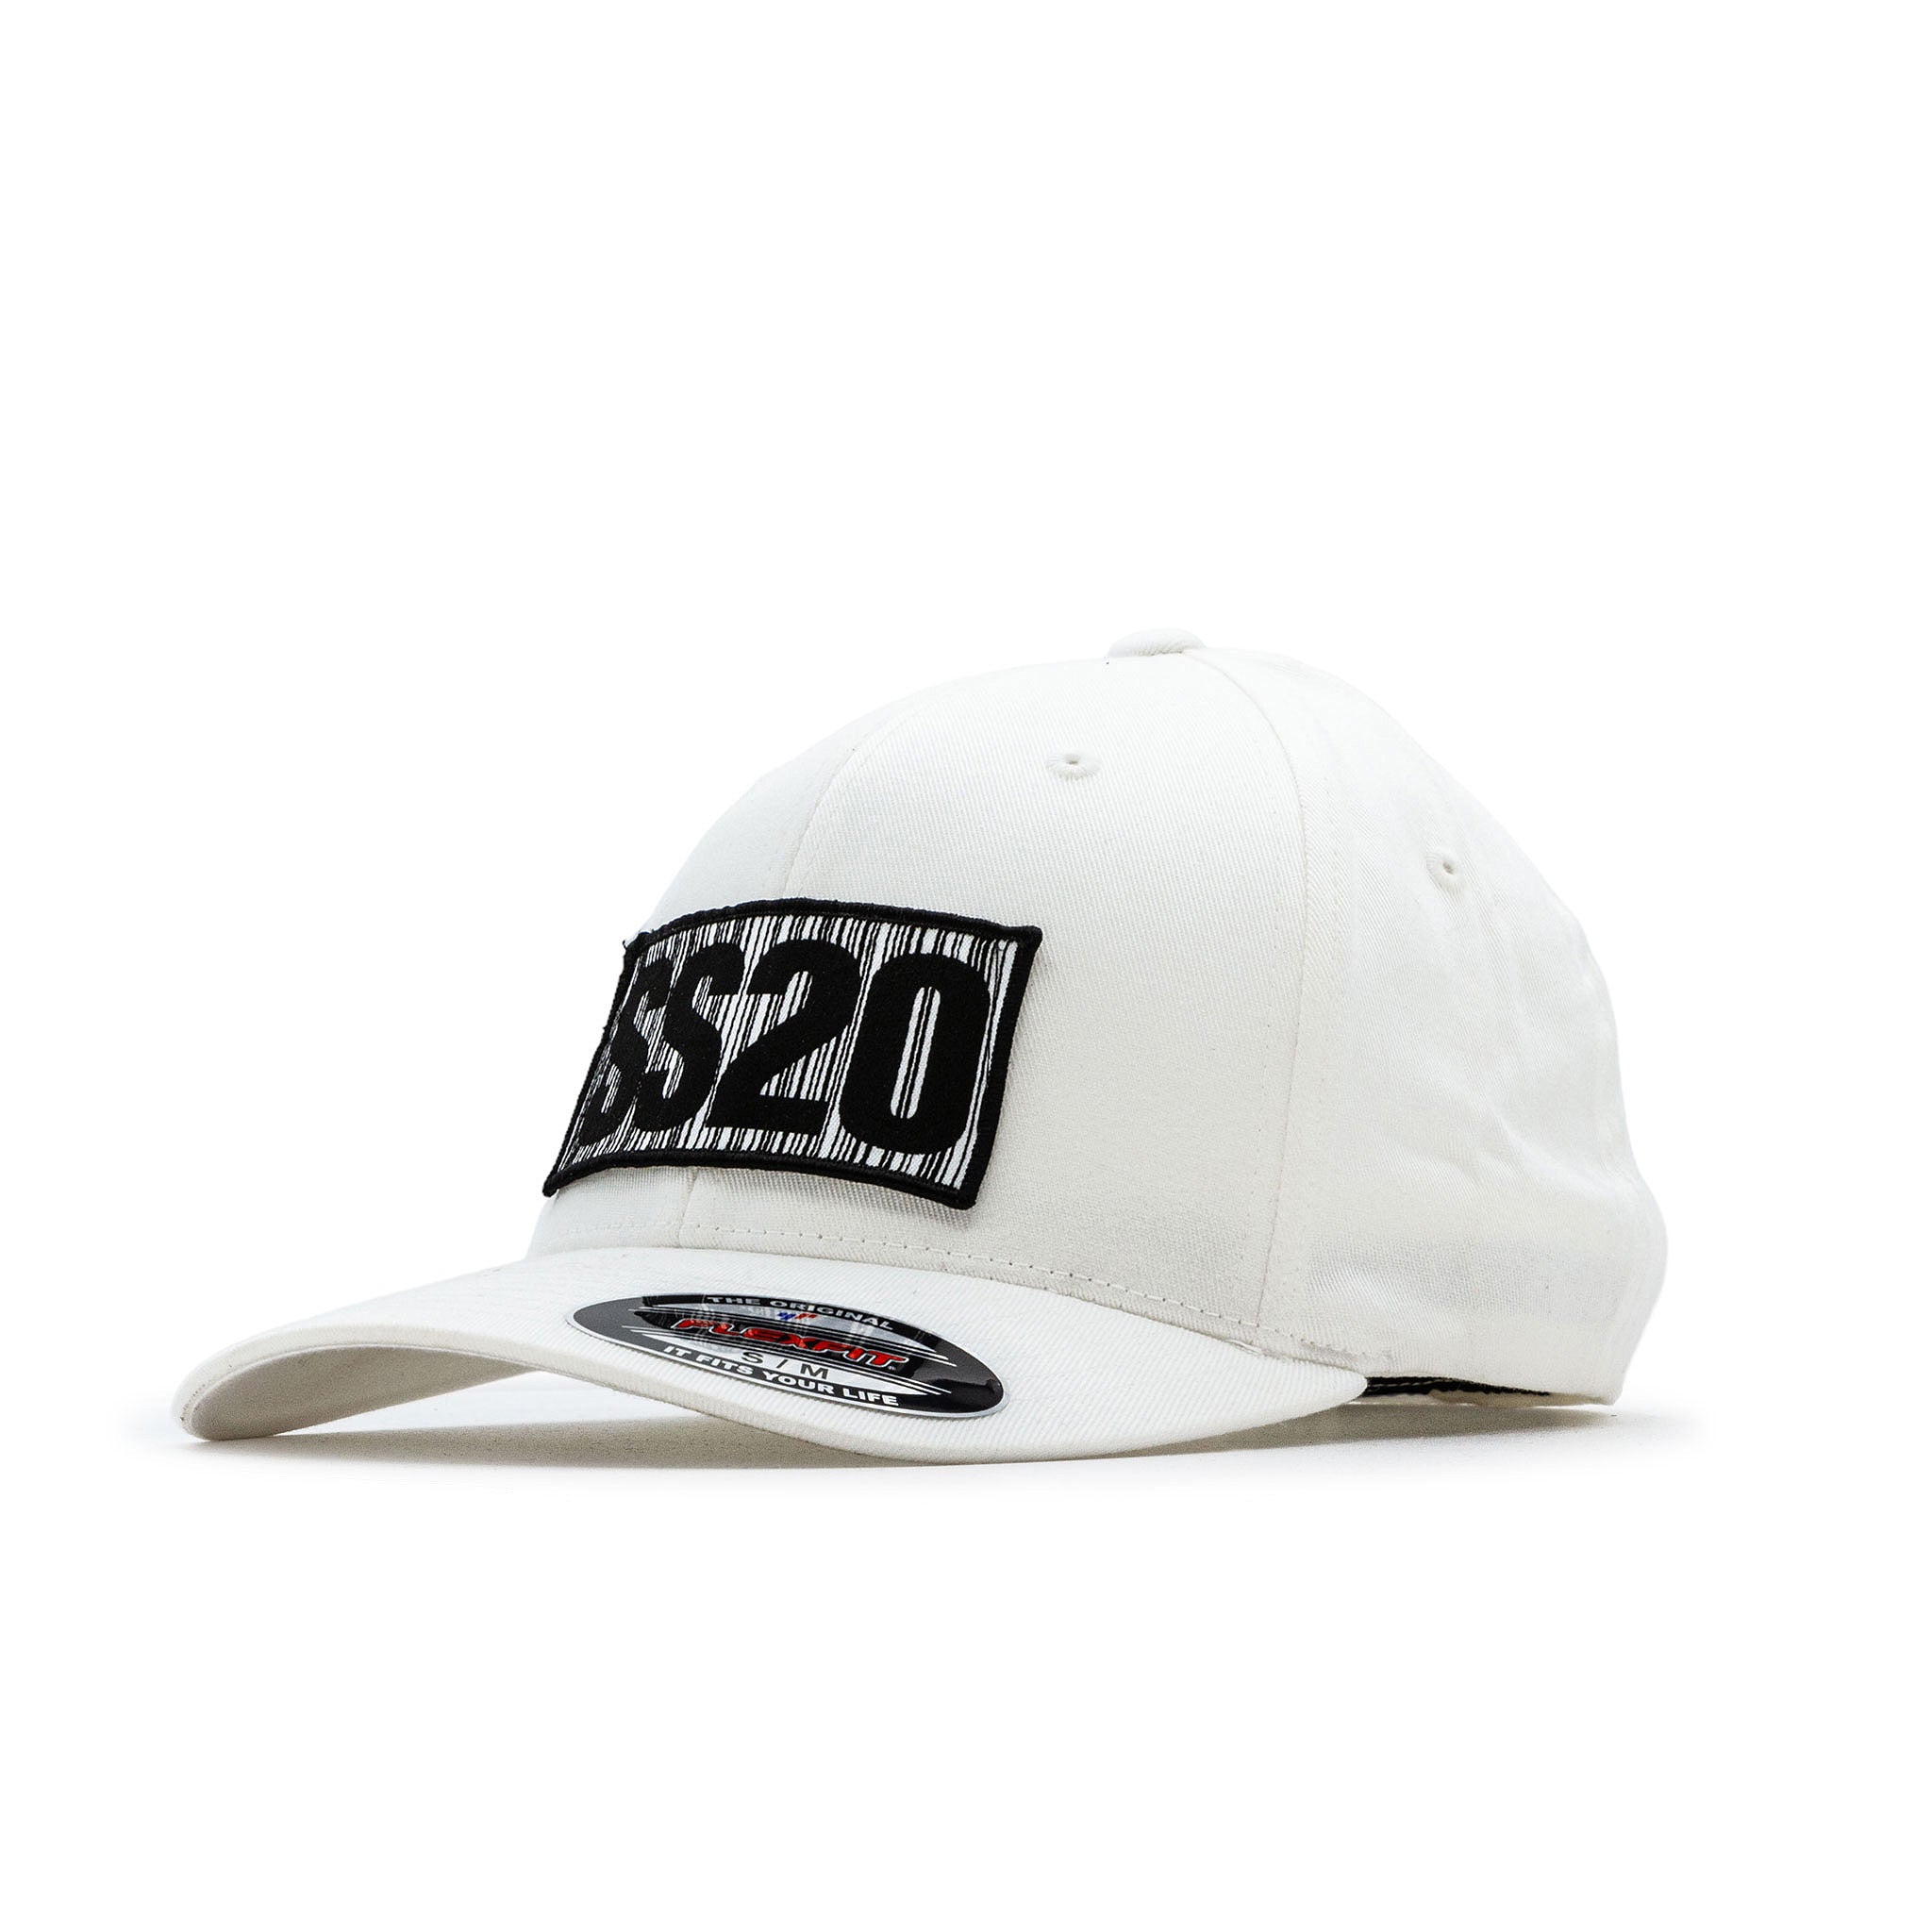 SS20 - Flexfit weareSS20 White Cap – Barcode Organic